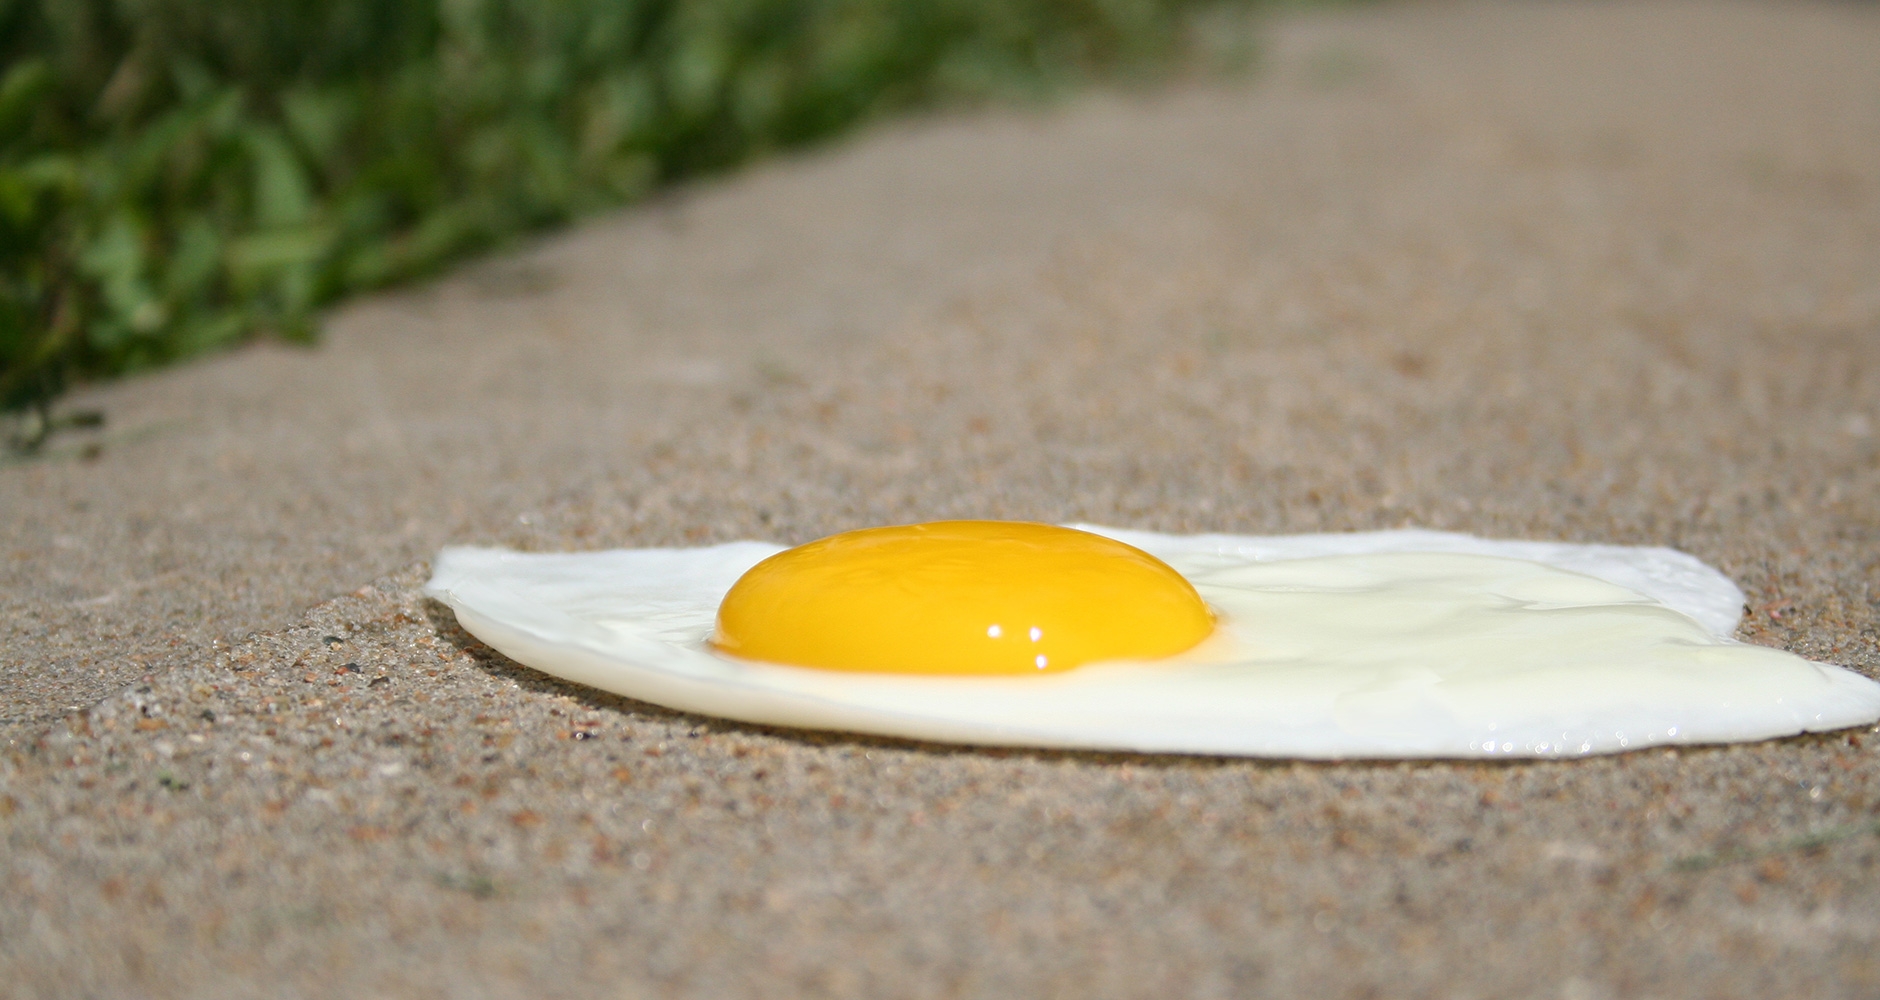 Sidewalk Egg Frying Day 2019